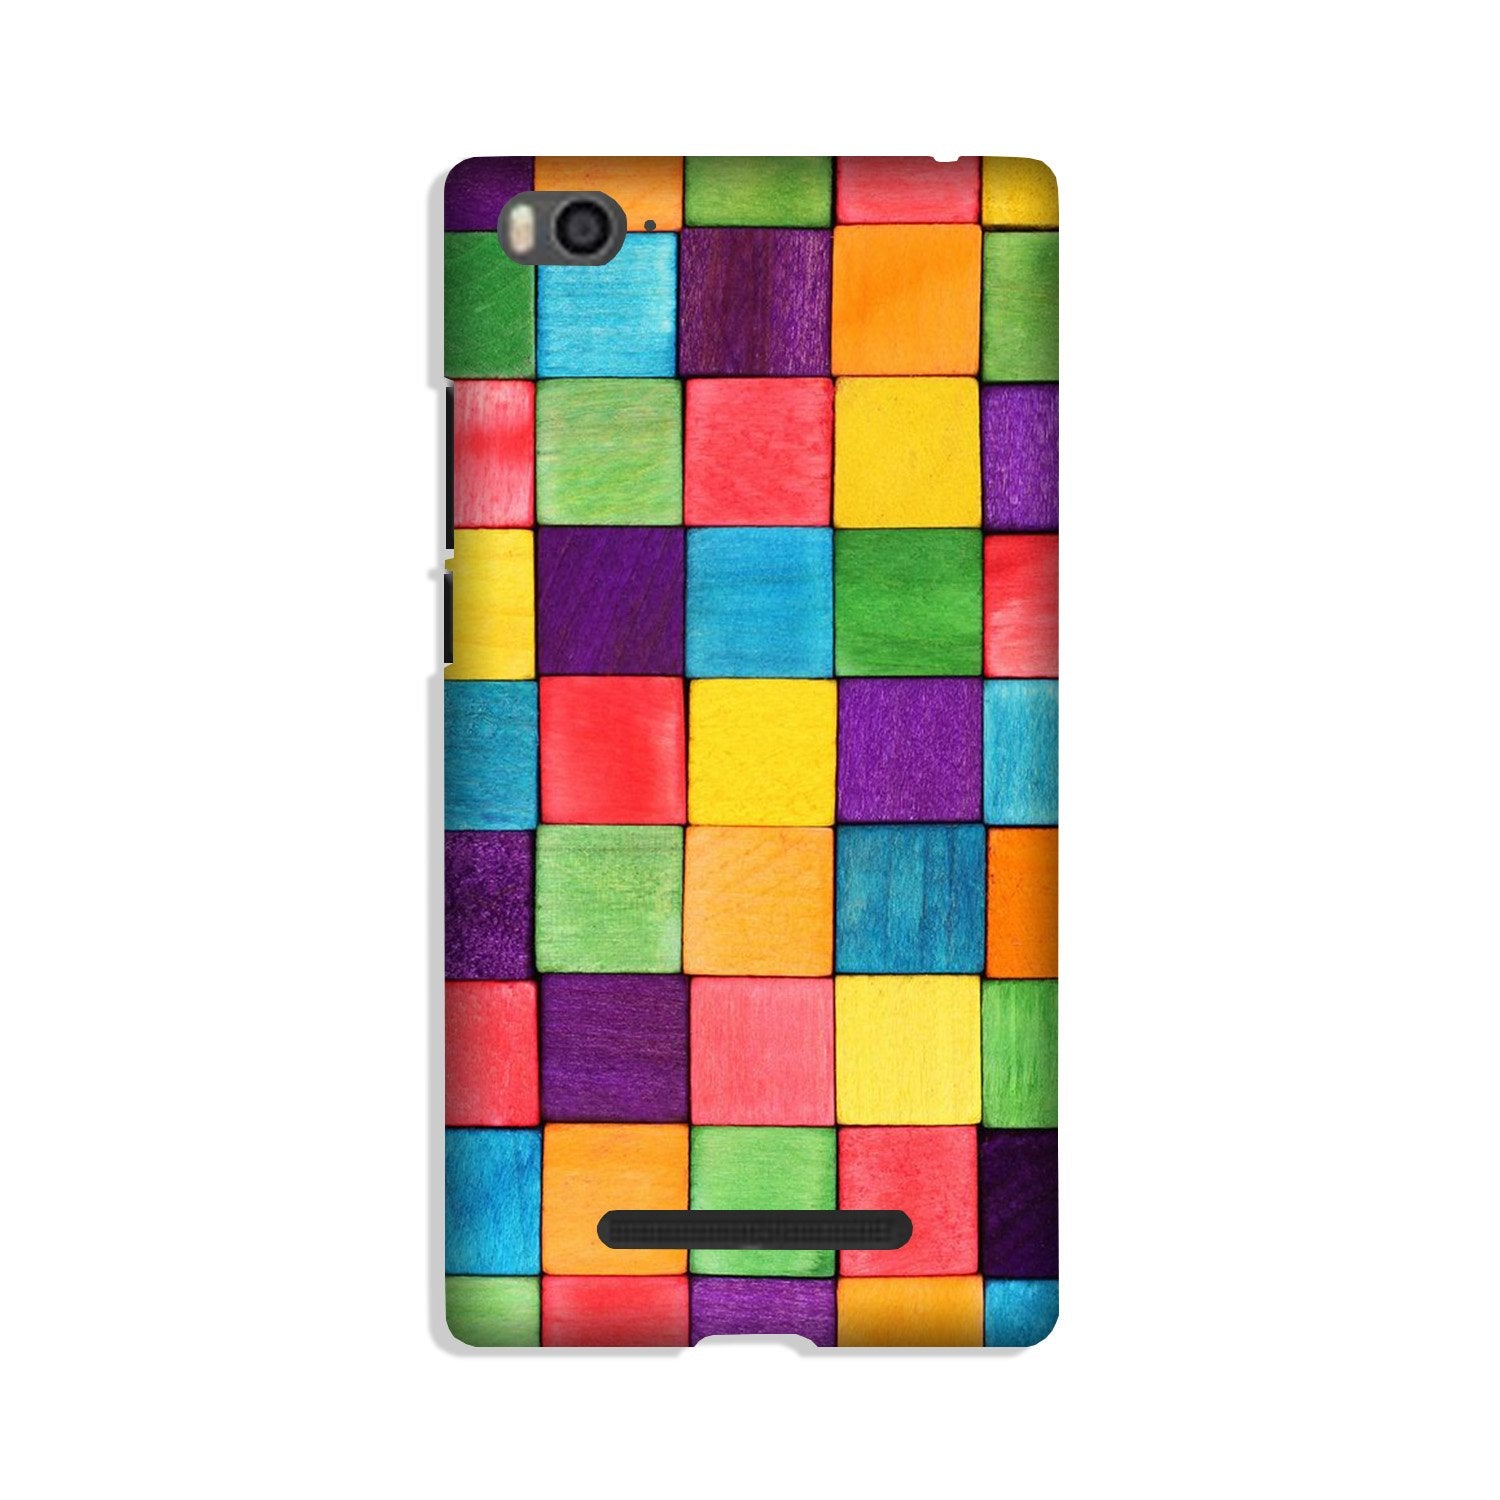 Colorful Square Case for Xiaomi Redmi 5A (Design No. 218)